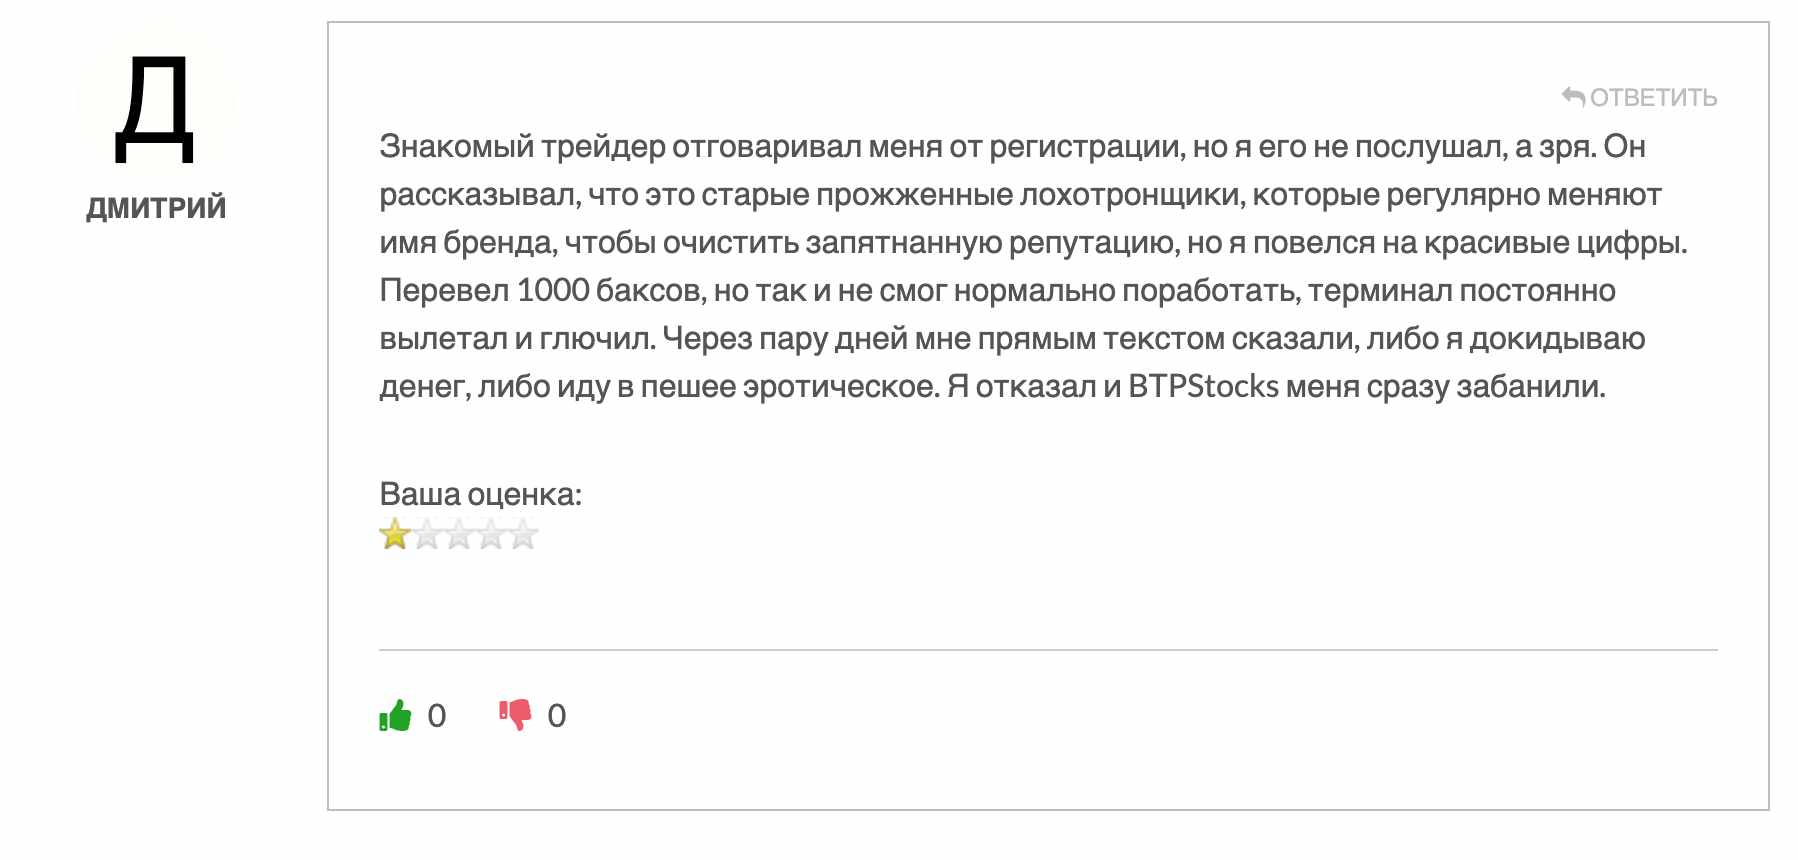 BTP Stocks — брокер-новодел, работающий по мошеннической схеме